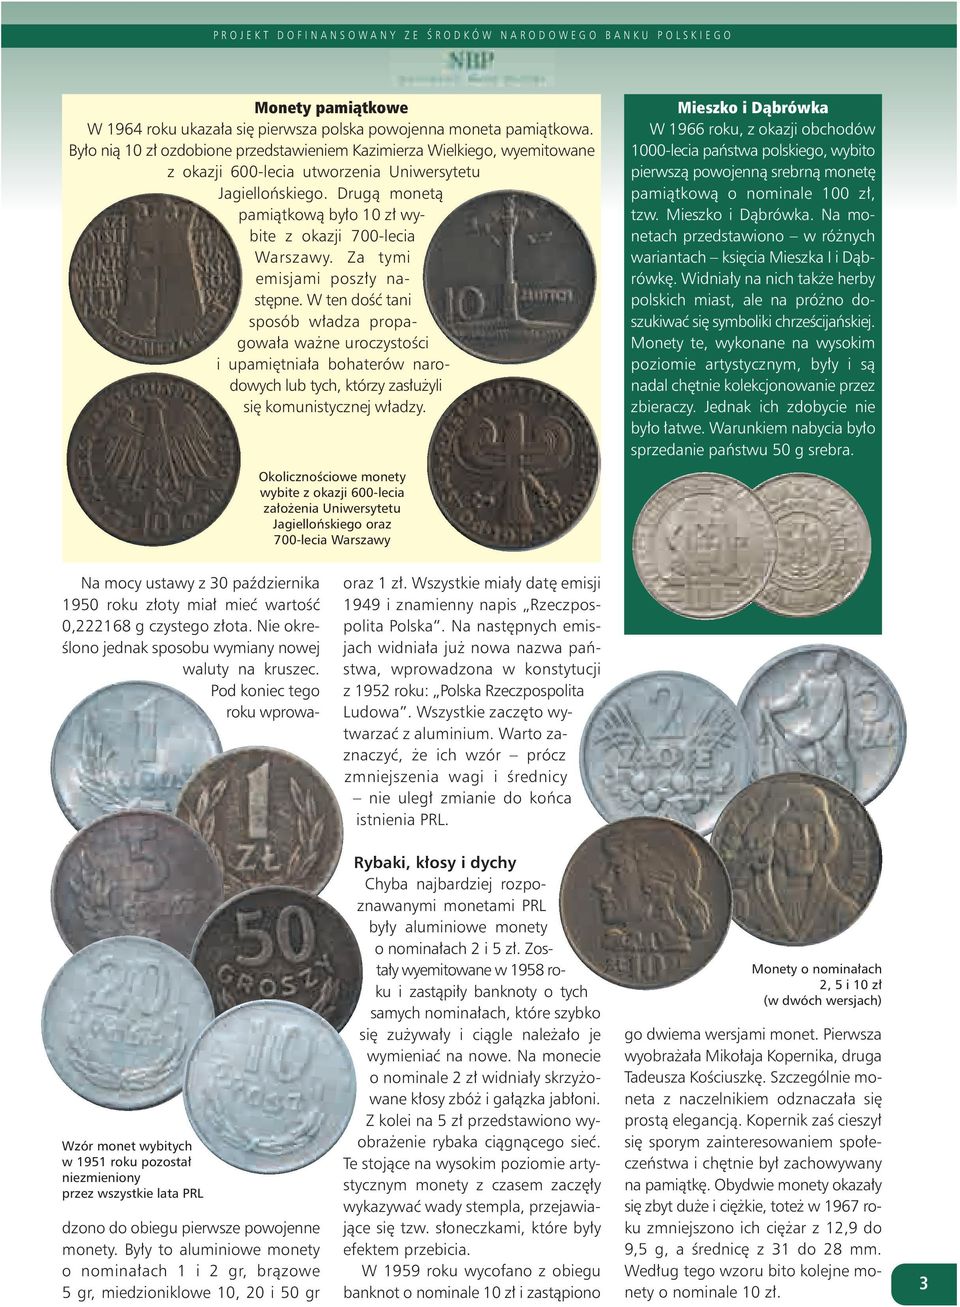 Drugą monetą pamiątkową było 10 zł wybite z okazji 700-lecia Warszawy. Za tymi emisjami poszły następne.